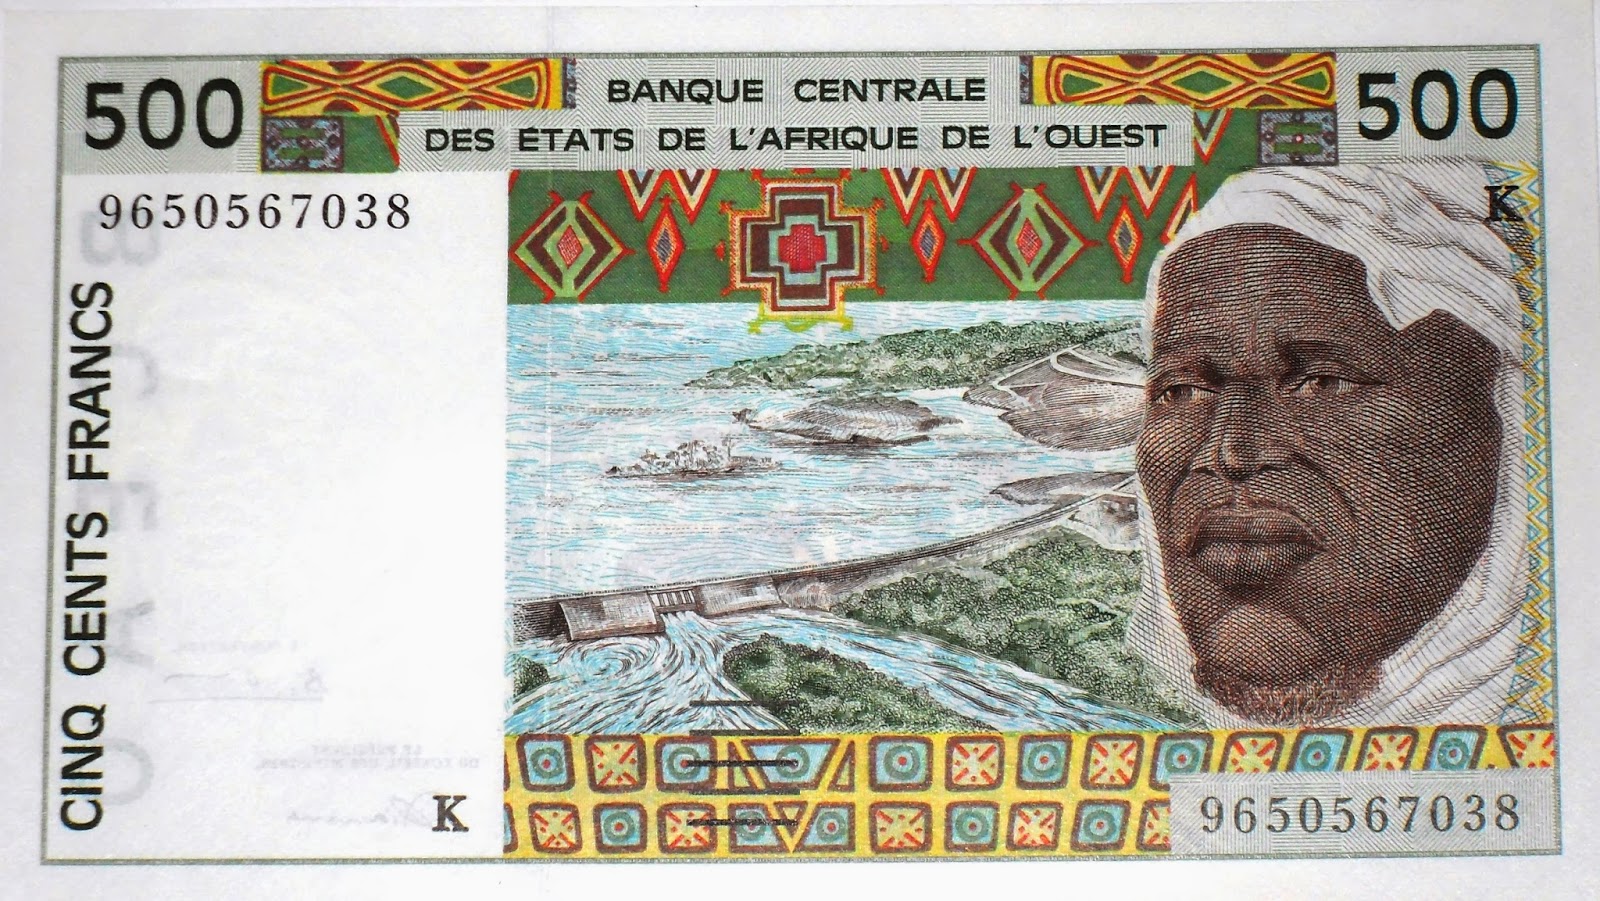 Crisis de confianza y reforma monetaria en Africa Occidental – Parte 2: La difícil transición del franco CFA al eco en Africa Occidental